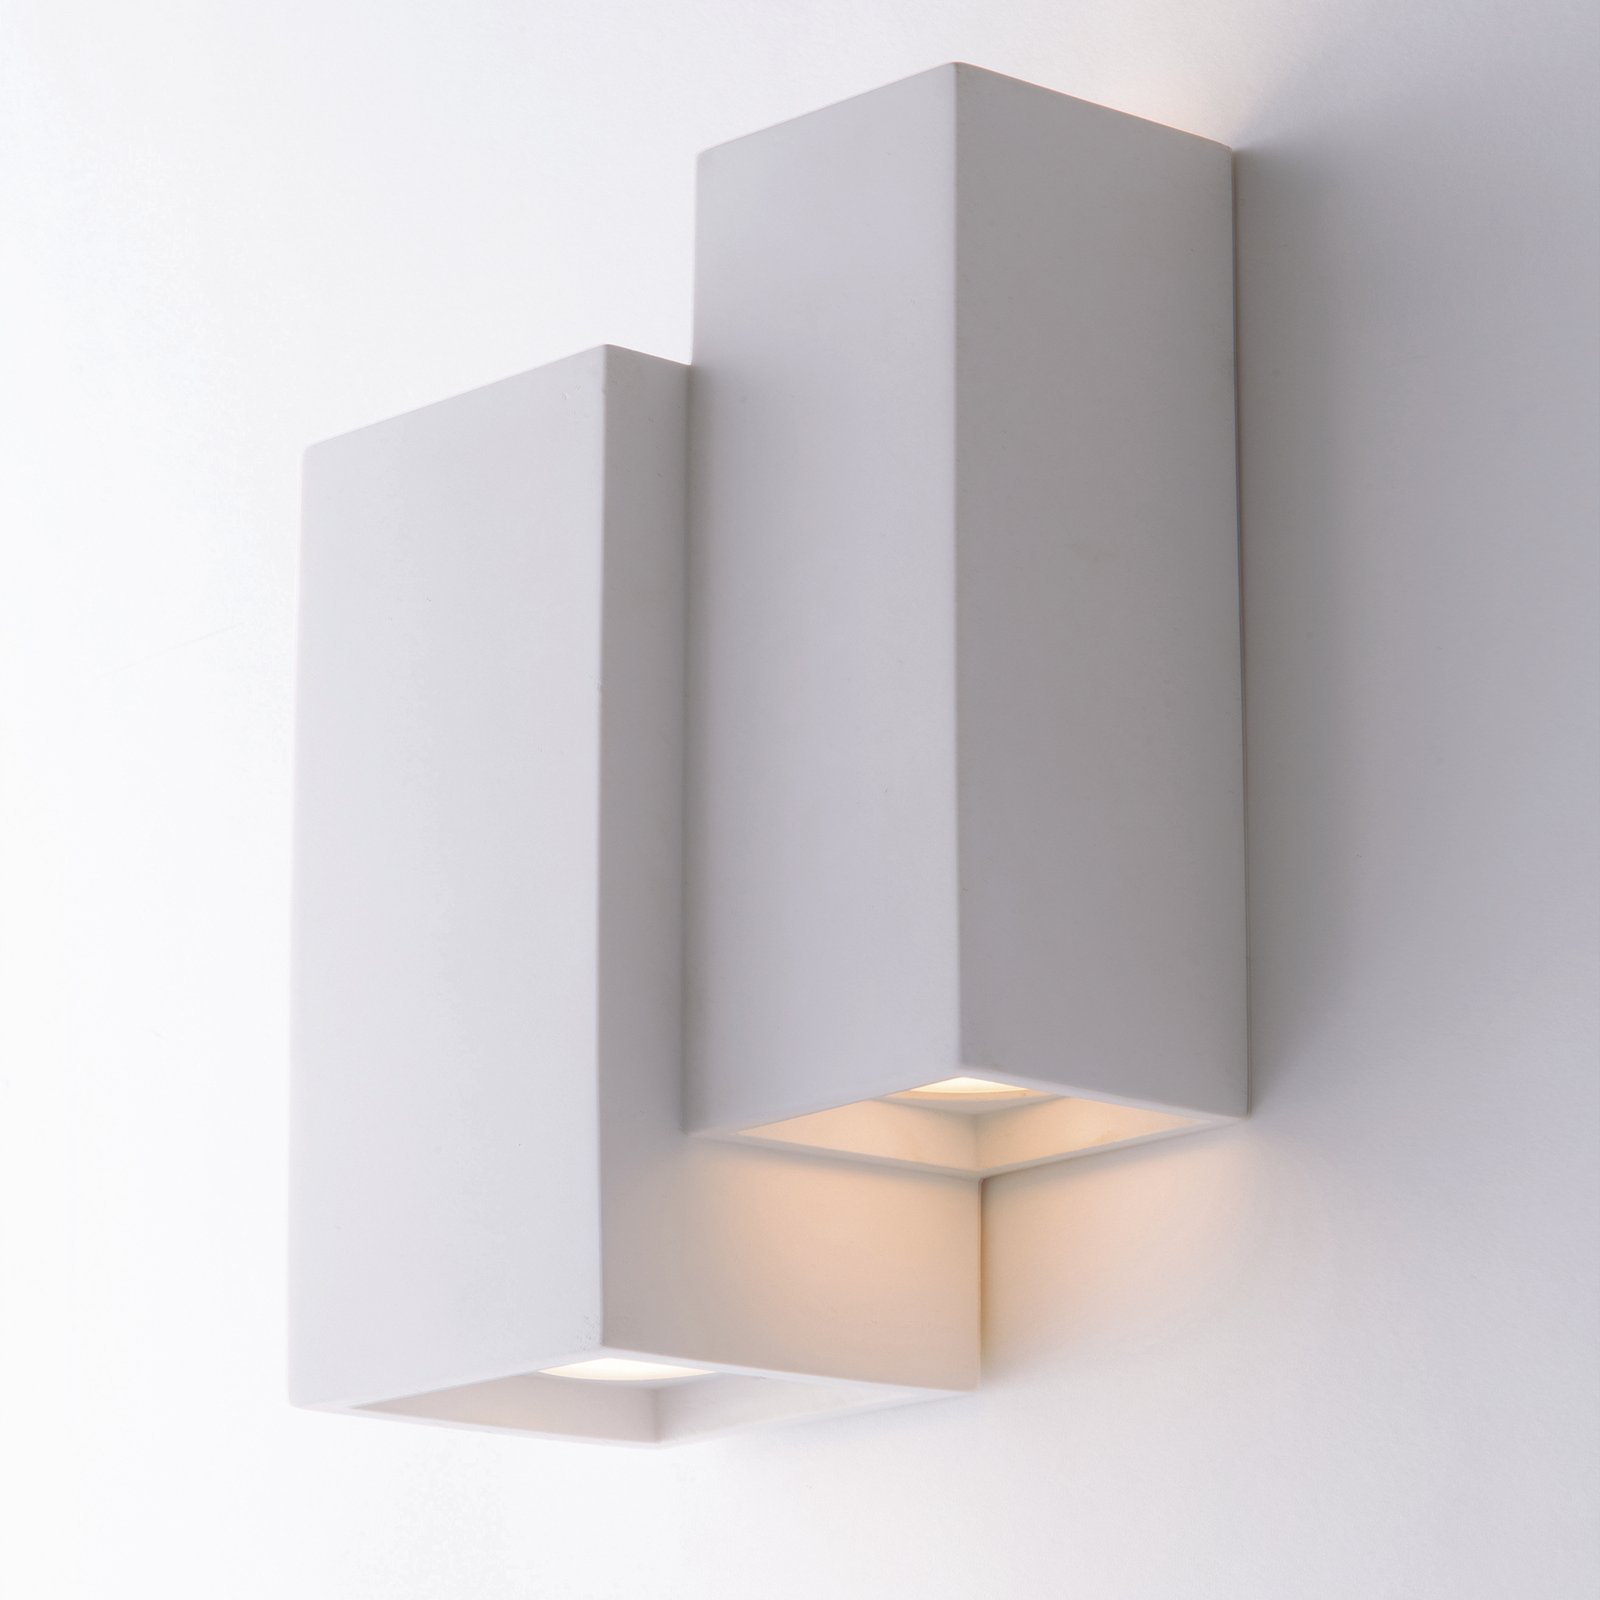 Vegglampe Foster laget av gips to firkanter, hvit